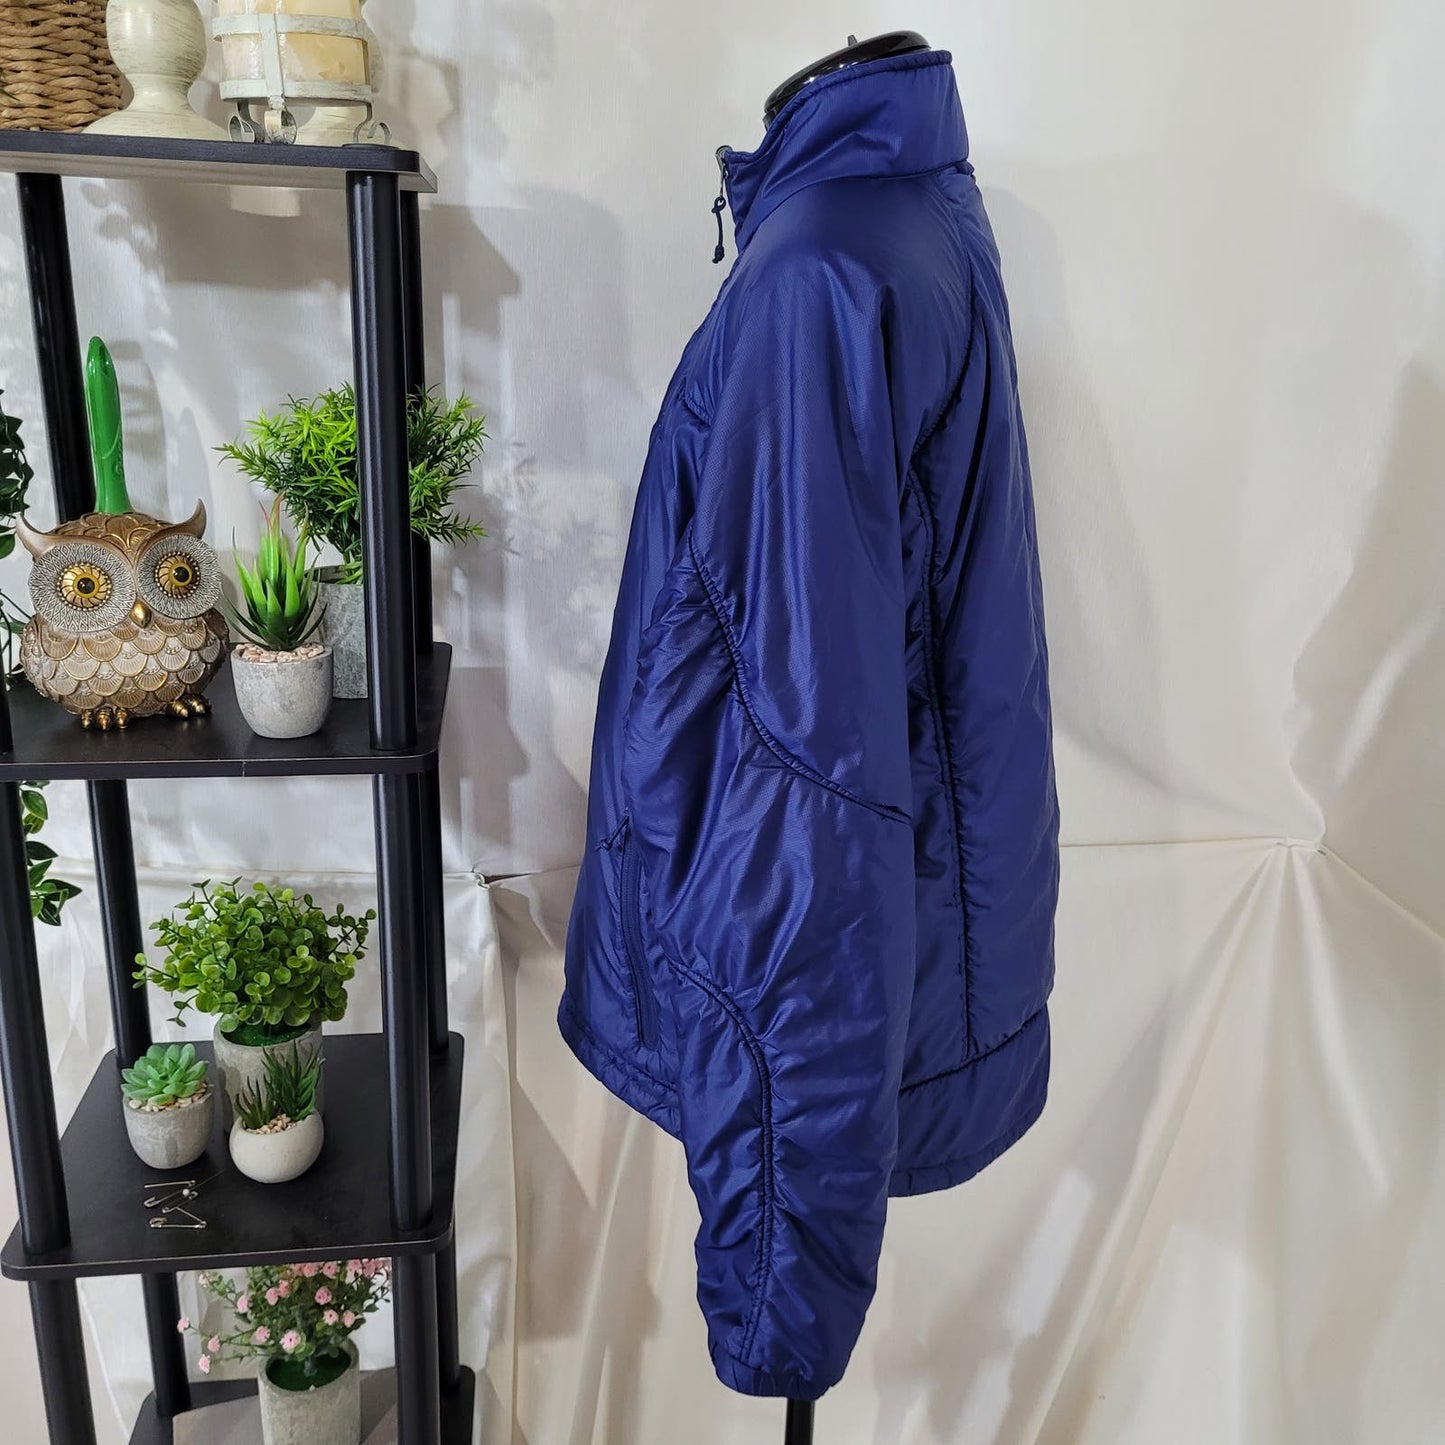 L.L. Bean Blue Puffer Primaloft Coat Jacket - Size Large